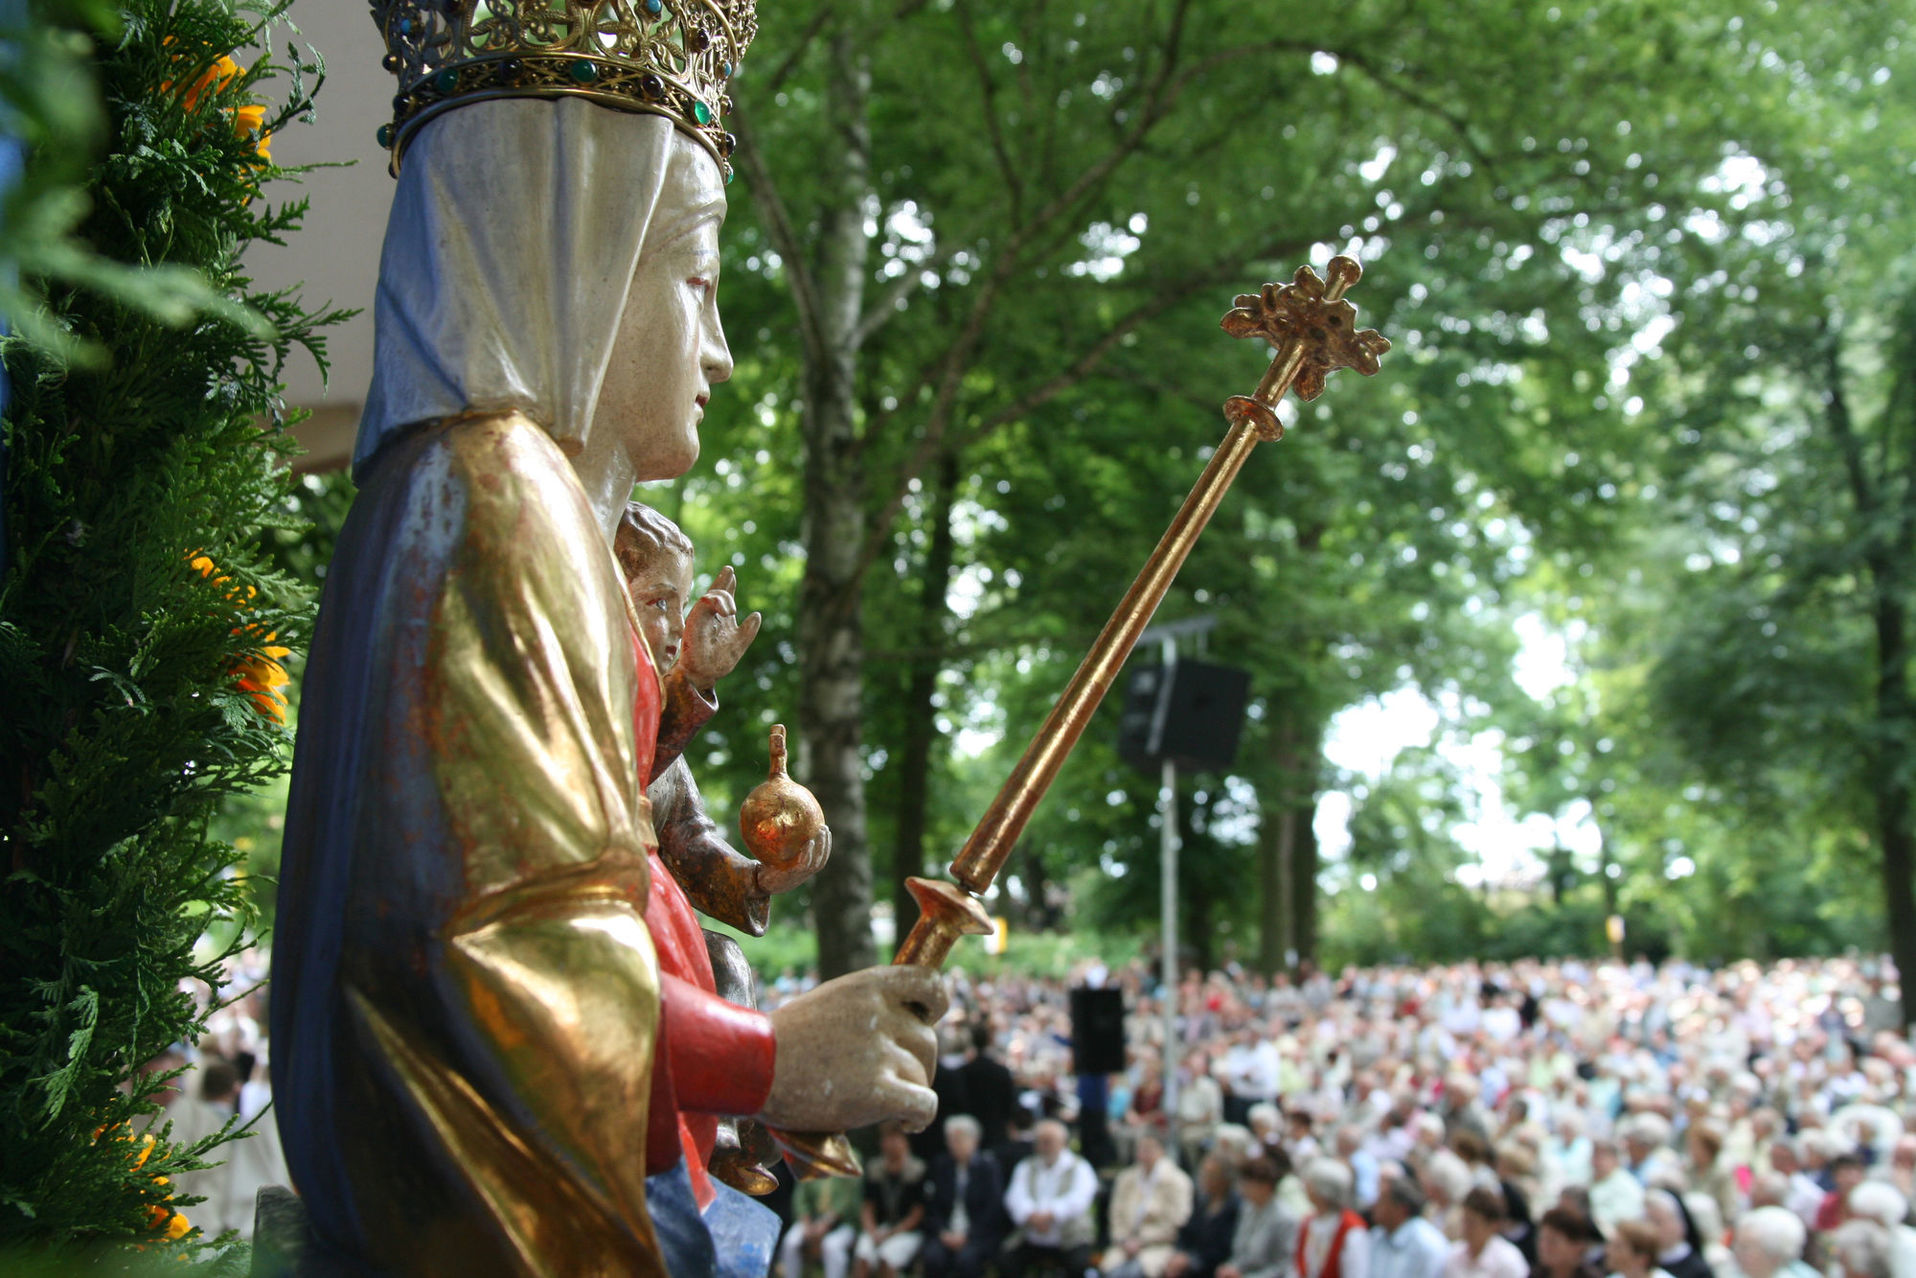 Archivfoto von der 330. Wallfahrt zu Maria in der Wiese im Jahr 2008.